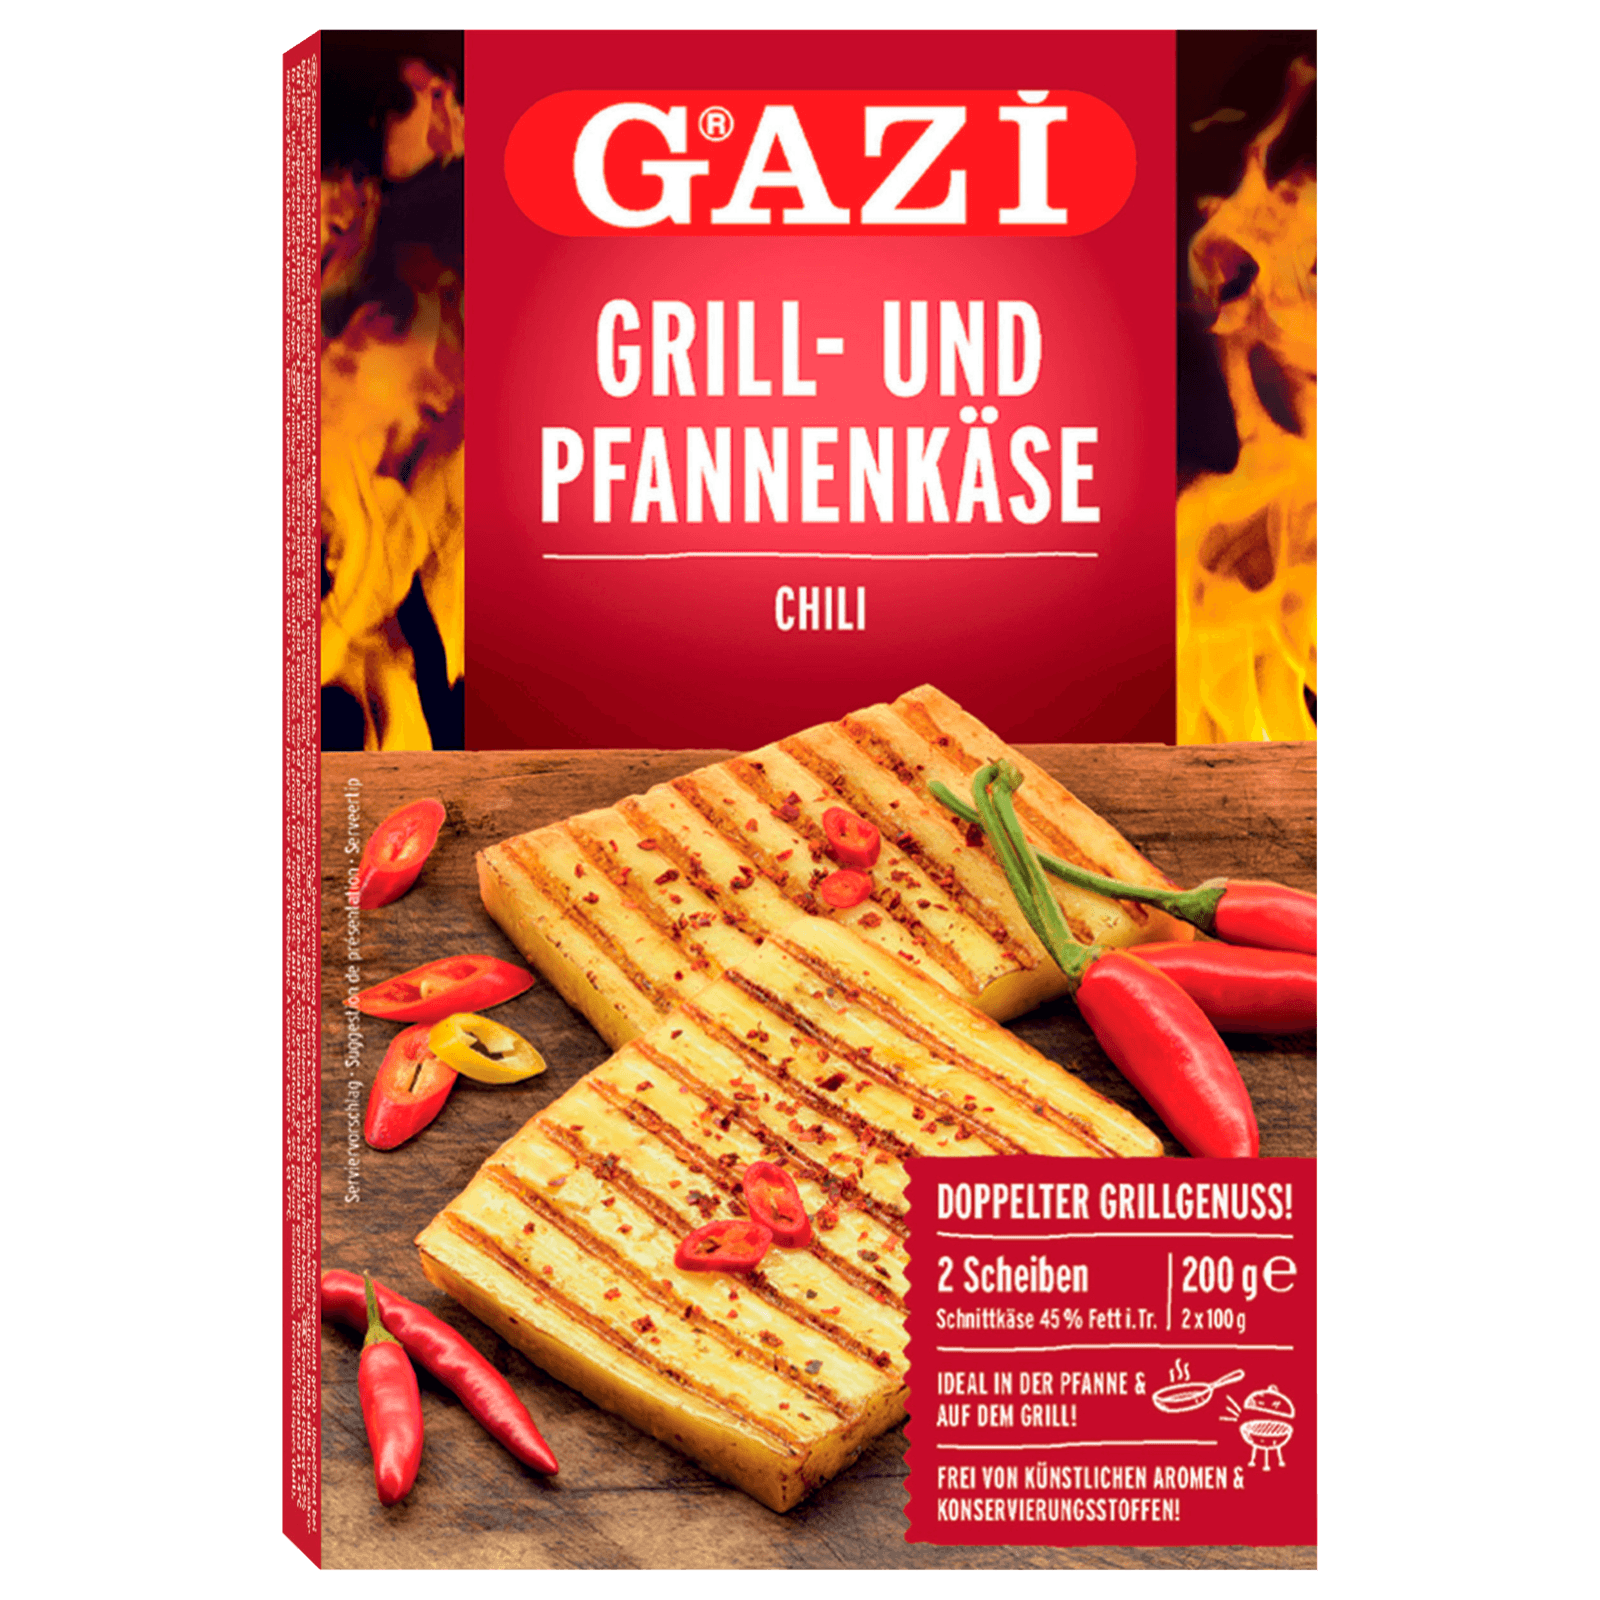 Gazi Grill- & Pfannenkäse Chili 200g bei REWE online bestellen!